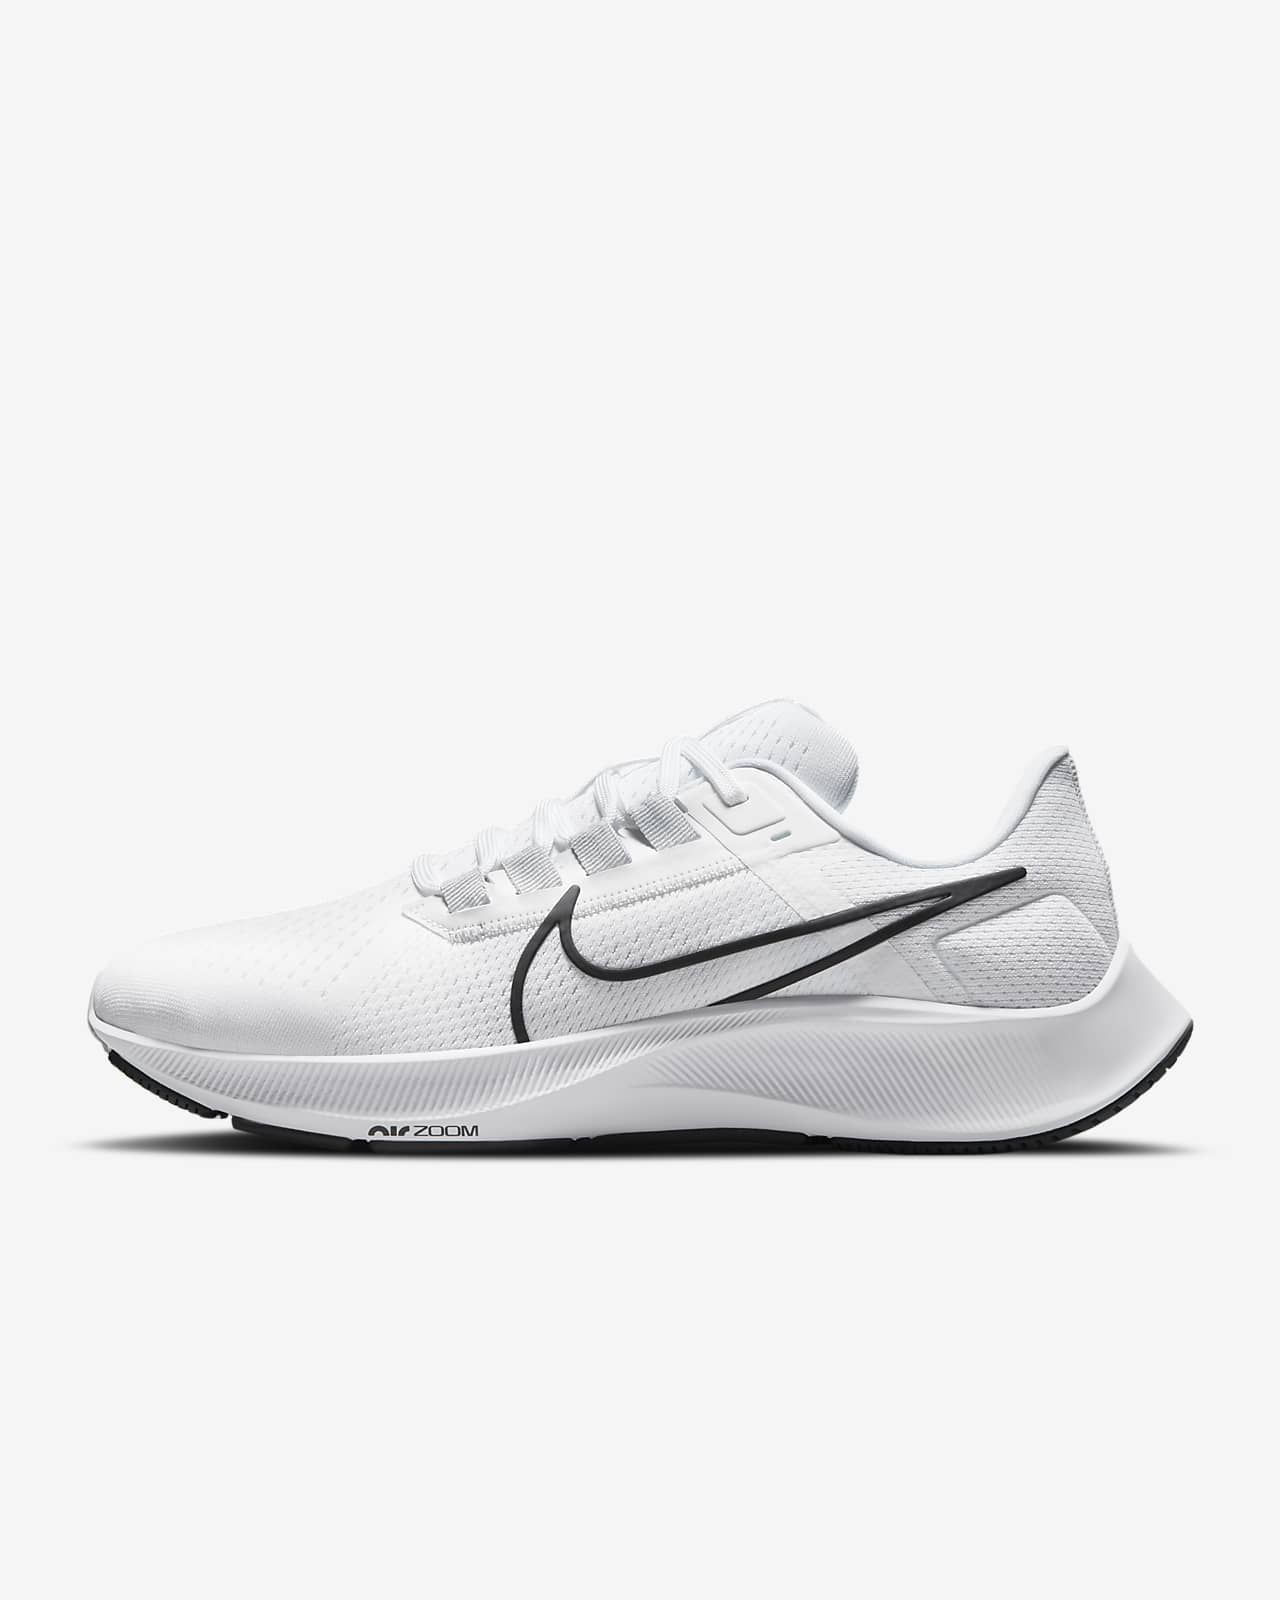 Nike Air Zoom Pegasus 38Men's Road Running Shoes$120 | Nike (US)